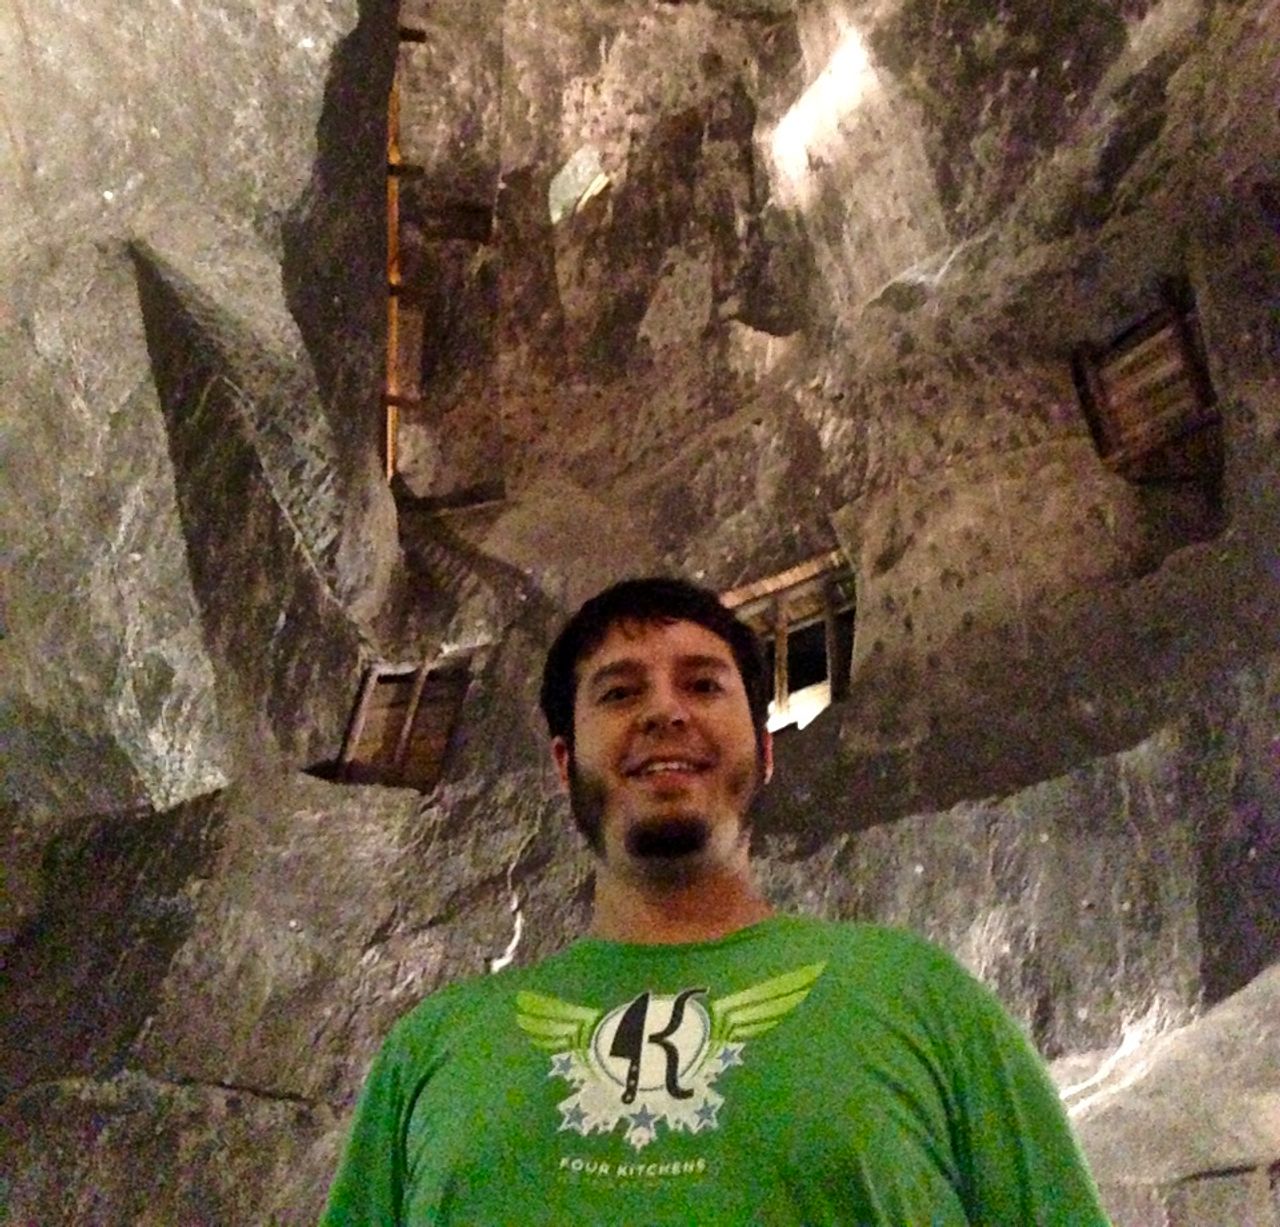 Chris standing in the Wieliczka Salt Mines near Kraków, Poland.